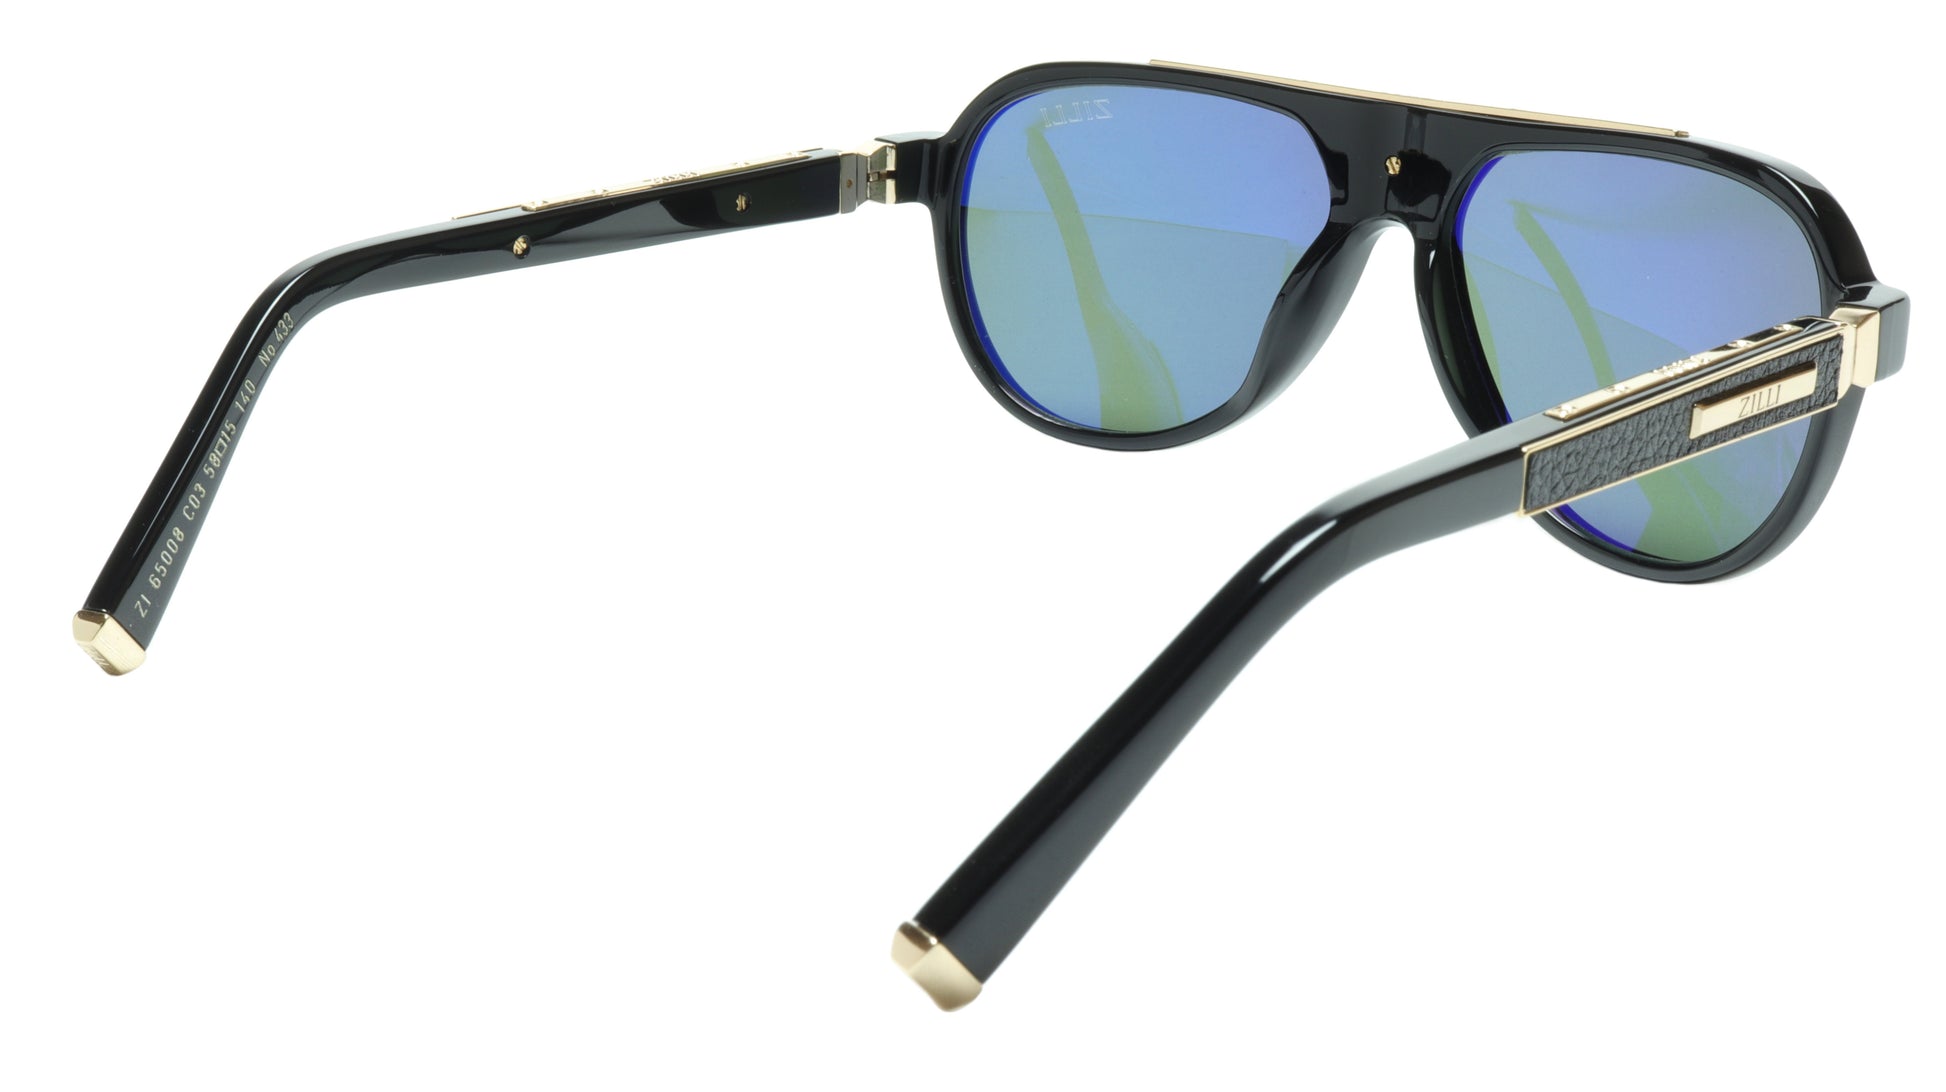 ZILLI Sunglasses Titanium Acetate Leather Gold Polarized France ZI 65008 C03 - Frame Bay